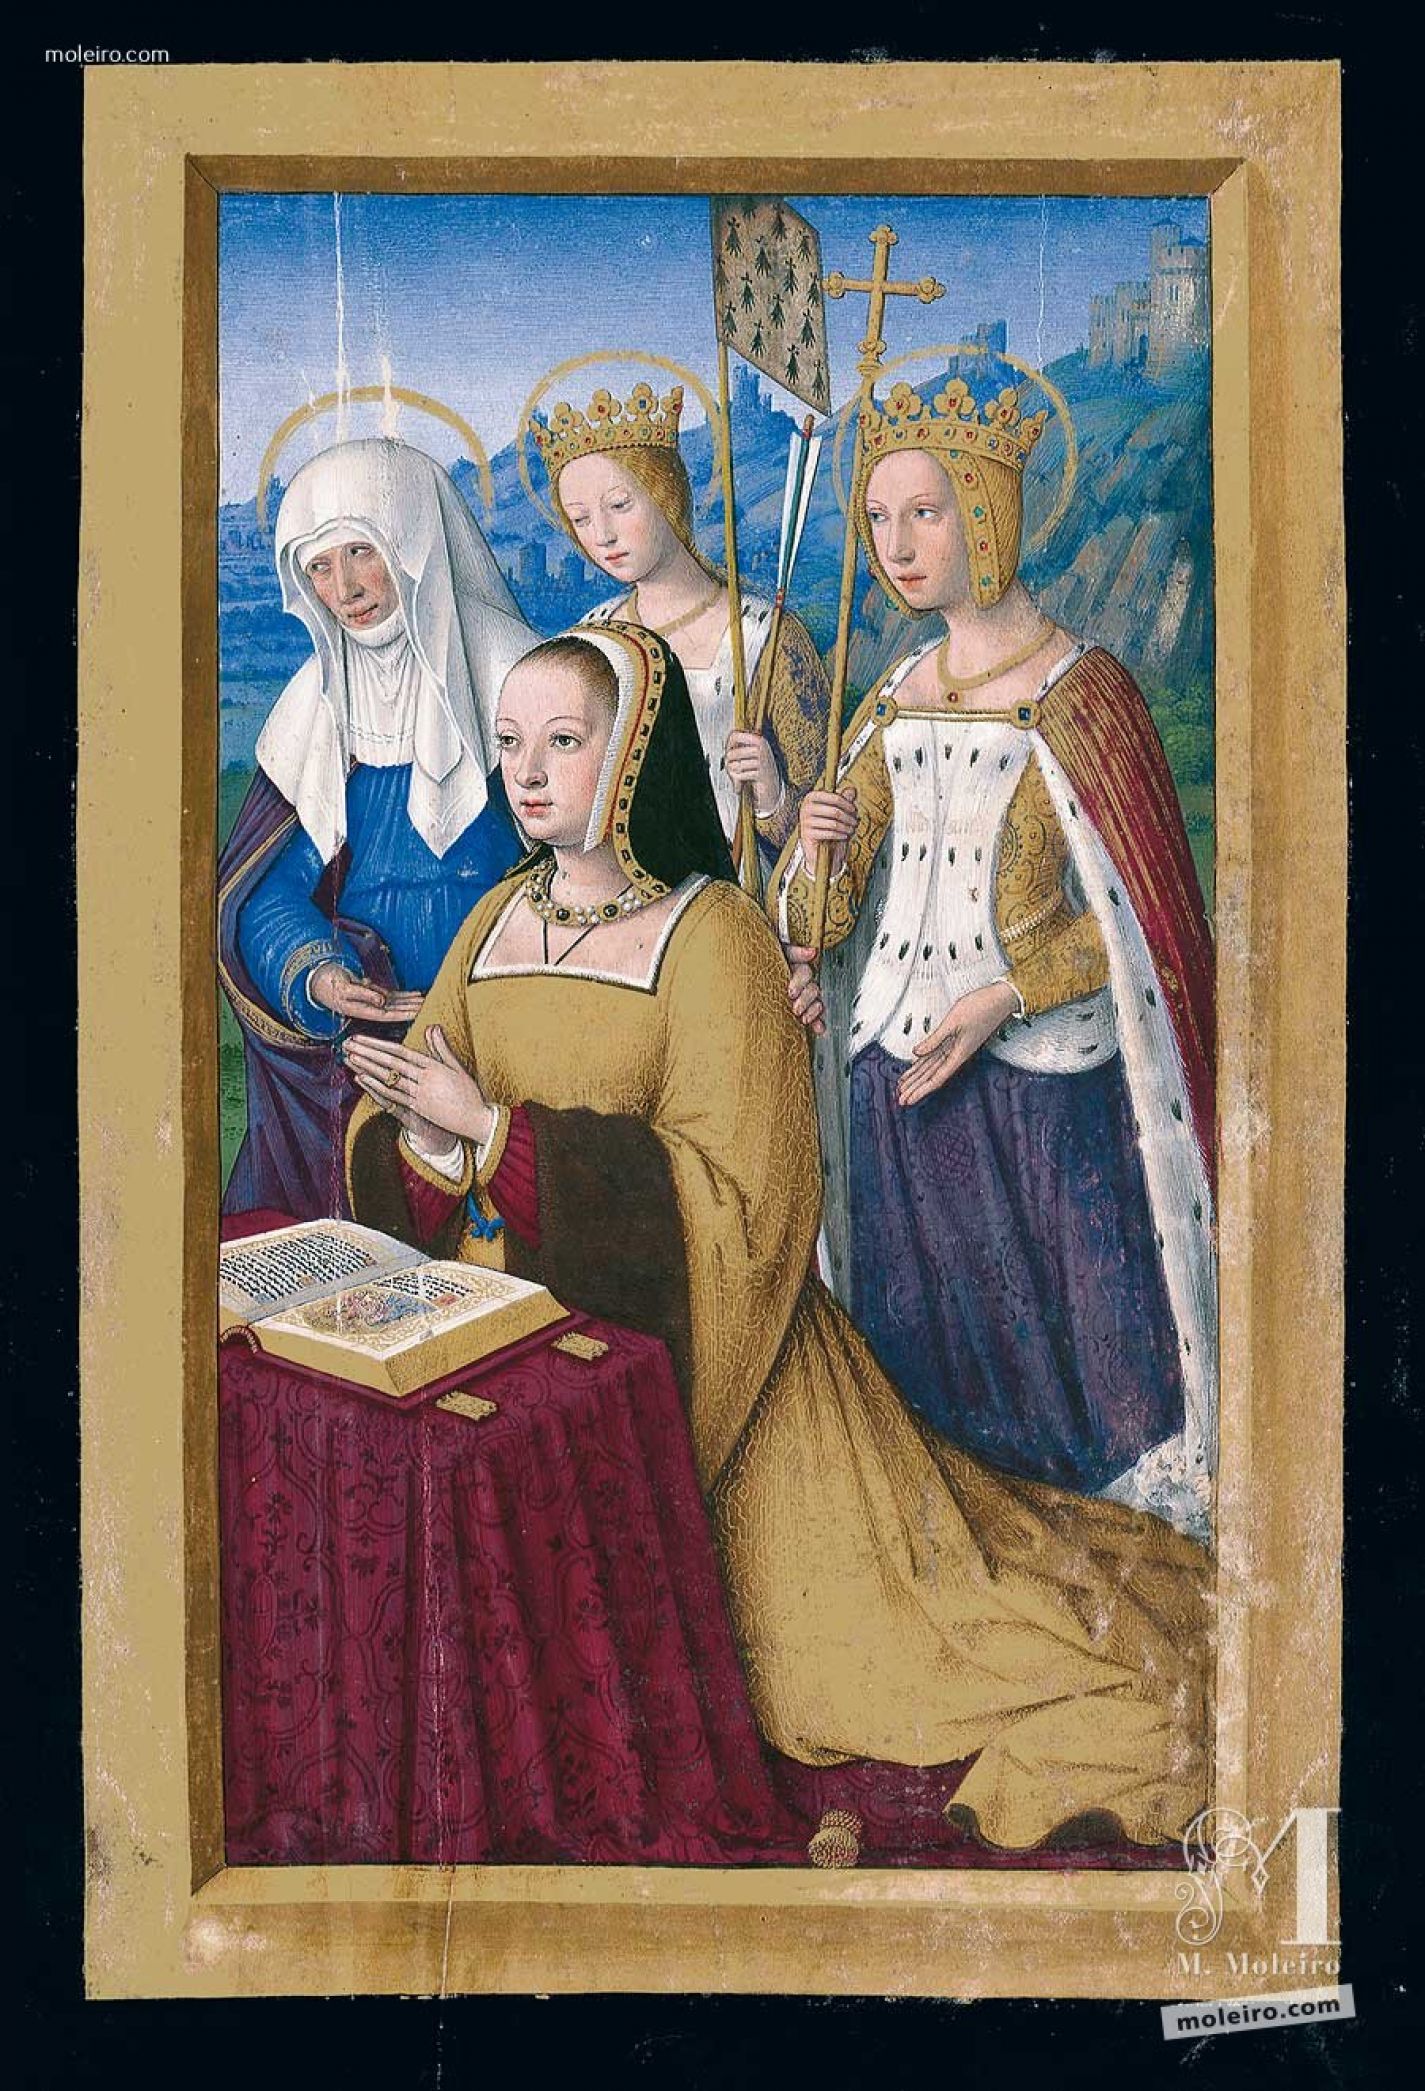 La reina Ana de Bretaña y sus acompañantes en oración, f. 3r